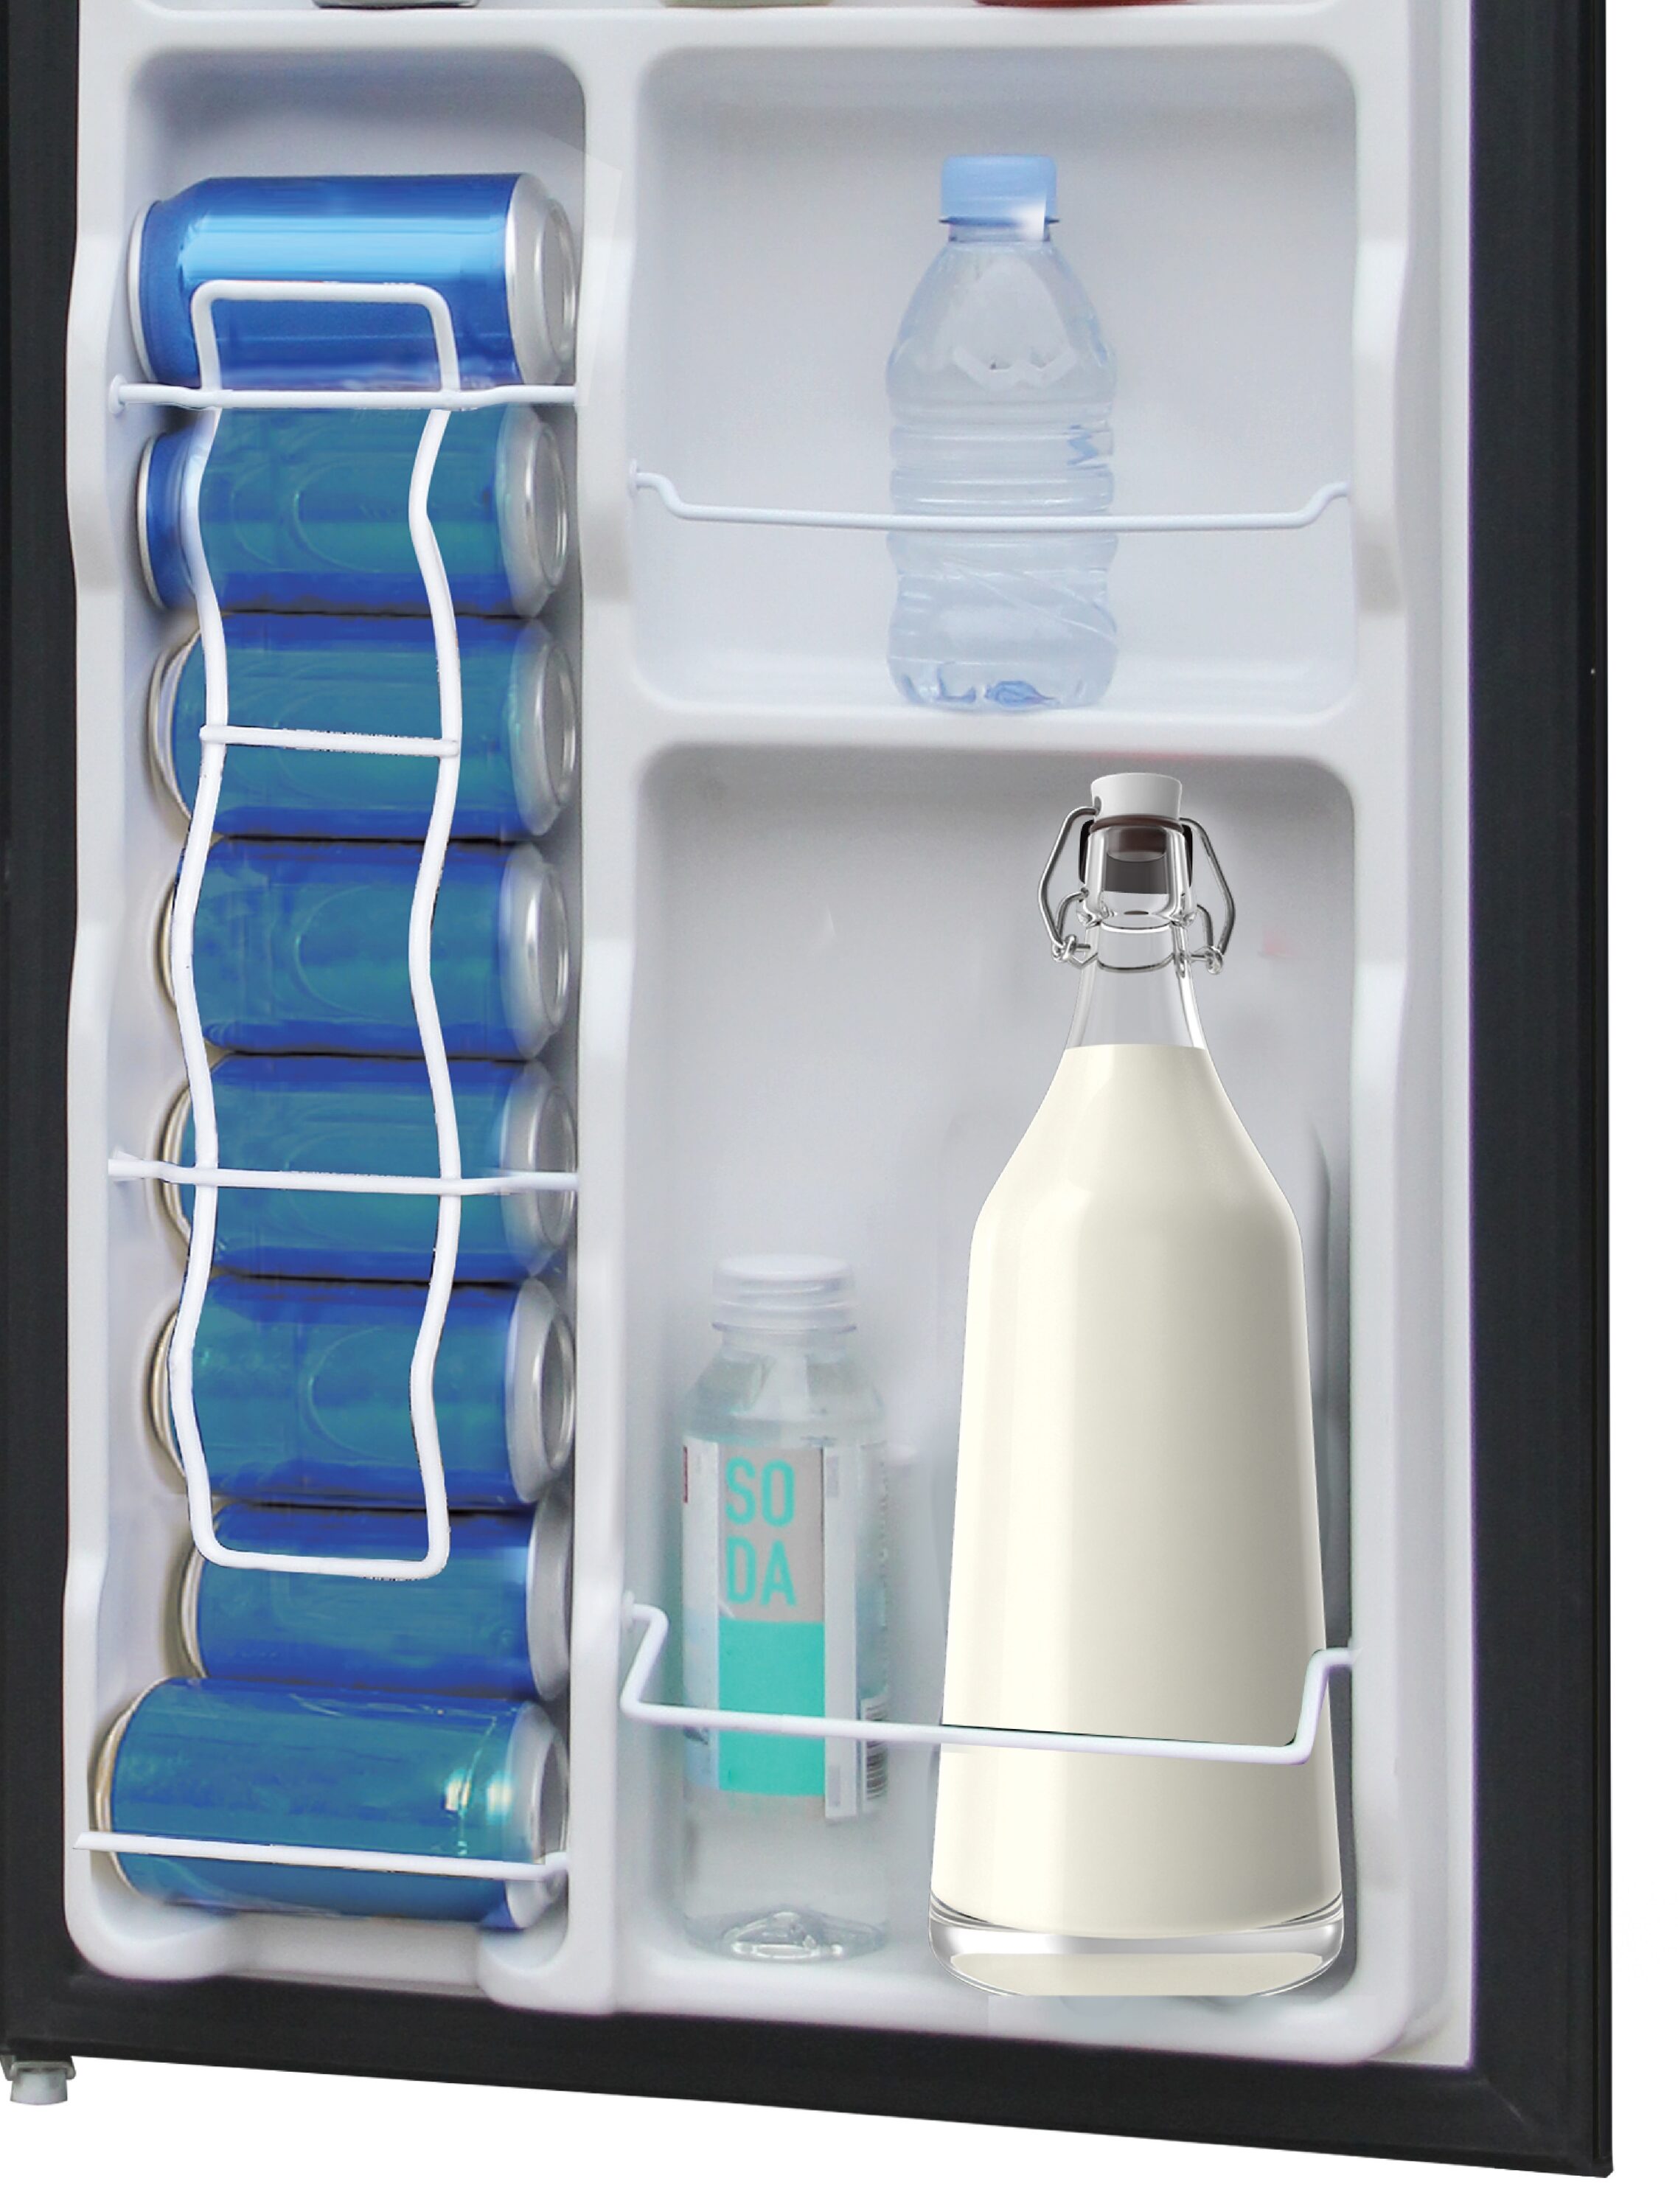 3.2Cuft Compact Refrigerator Double Door Fridge Home Office Dorm Beverage  Cooler 